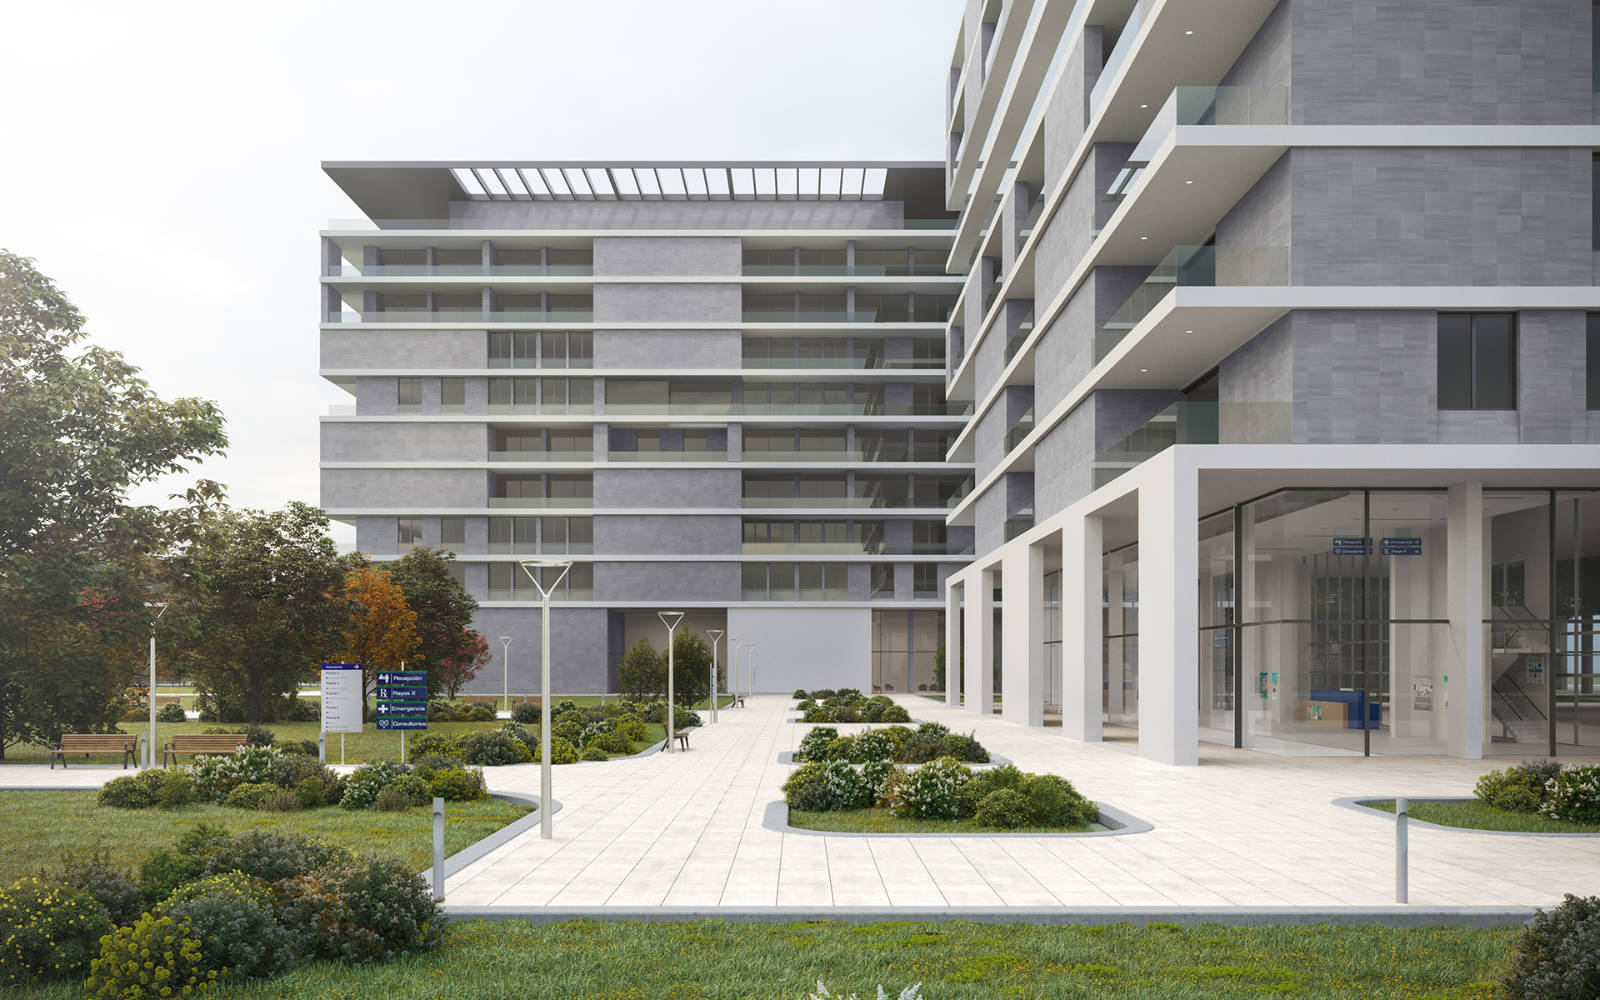 pavimenti-rivestimenti-Venis-Projects-fachada-concrete-grey-59.6x59.6-cm-pavimento-avenue-white-59.6x59.6-cm-fratelli-nero